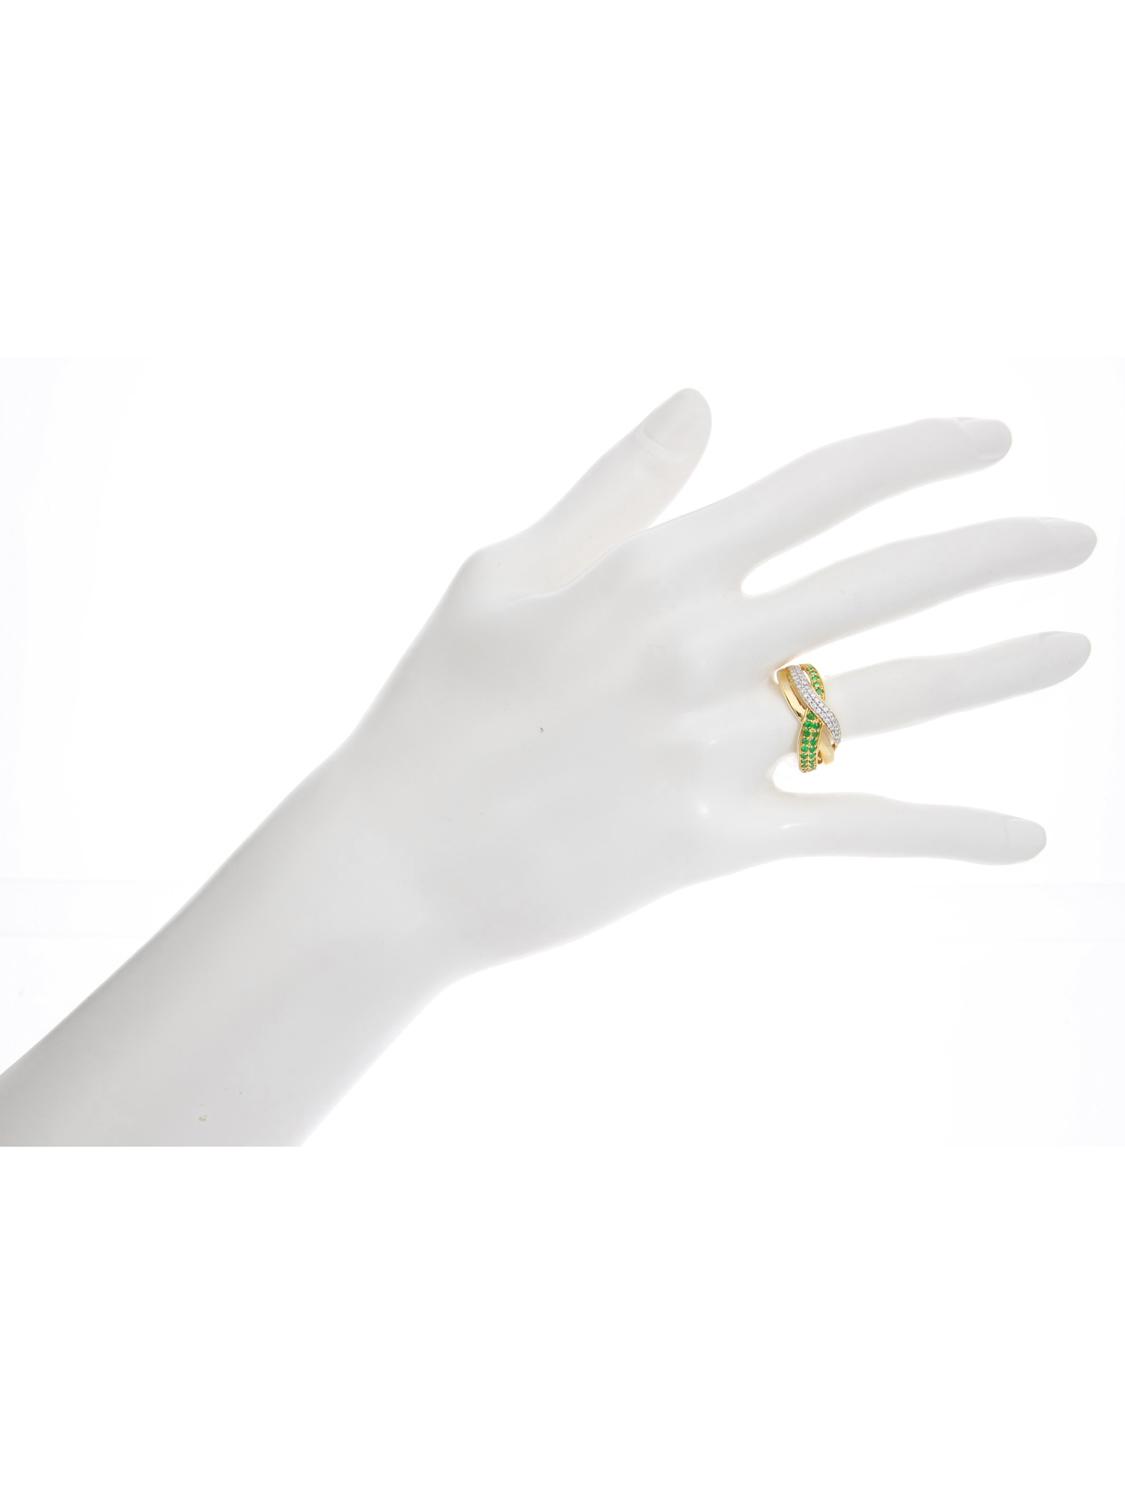 Damenring aus echtem Gelbgold mit Smaragd Edelsteinen - Jacotte | Büstenansicht